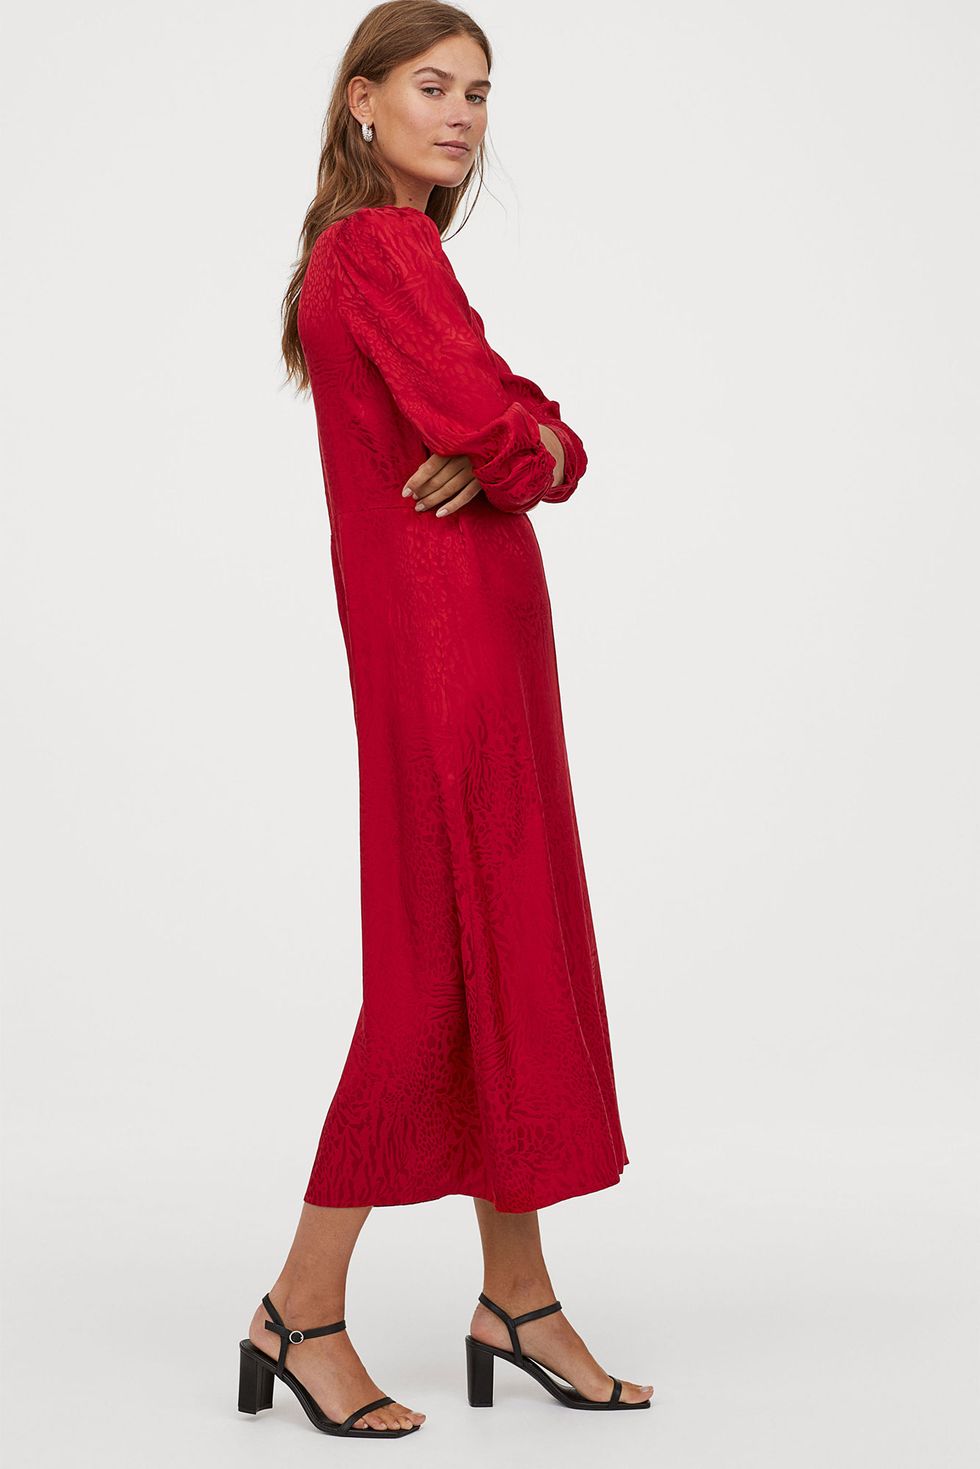 Prevalecer más combinar Este vestido rojo drapeado de manga larga de H&M es lo mejor